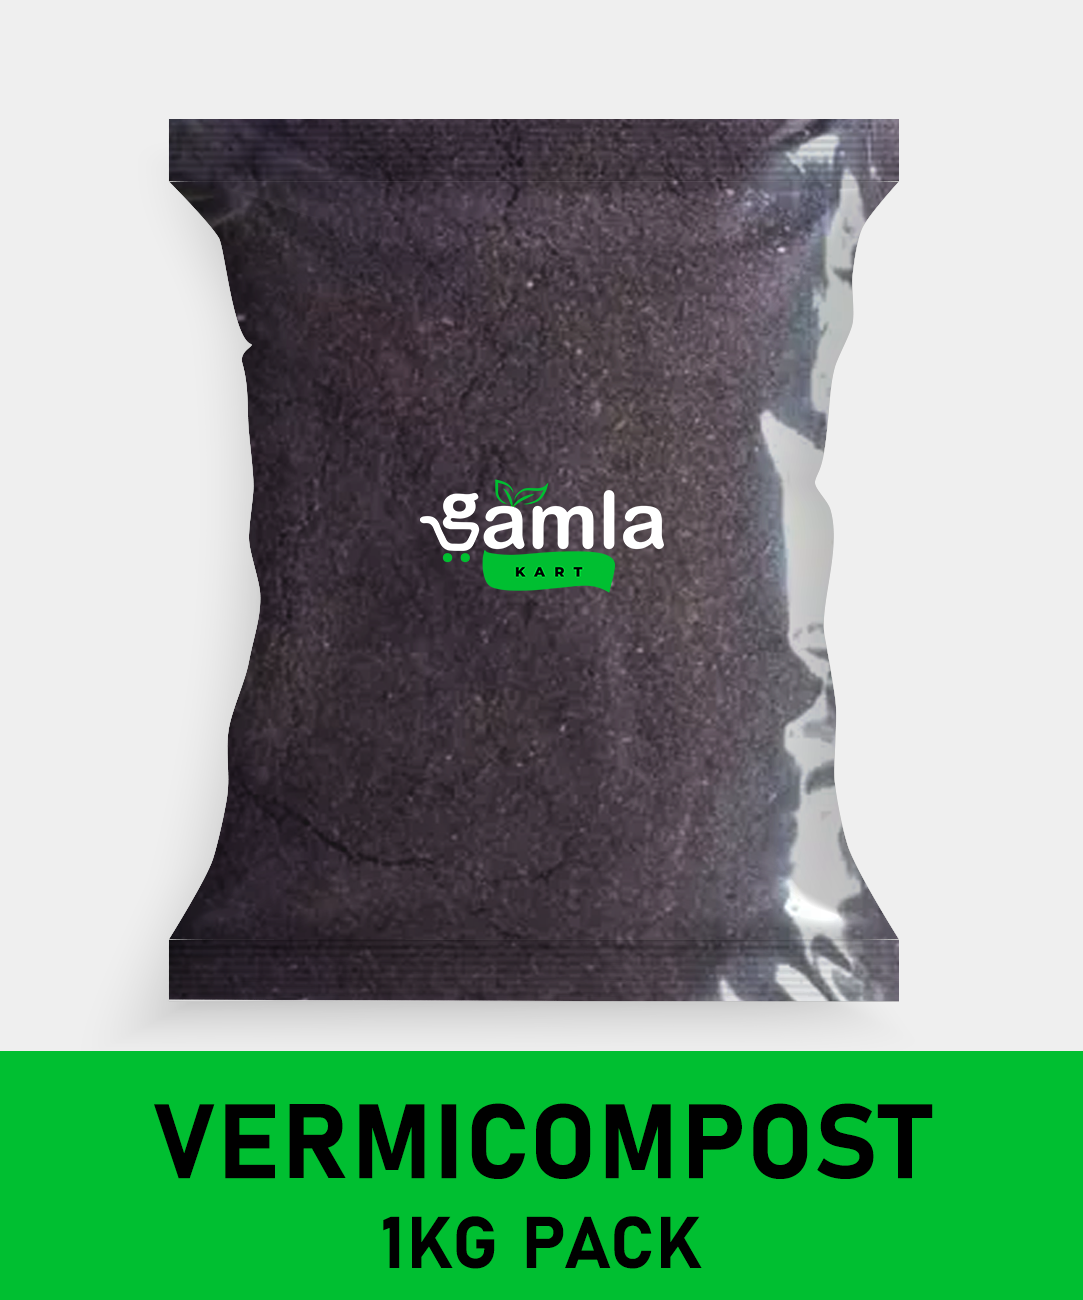 Vermicompost Fertilizer - Worm Magic for Your Plants